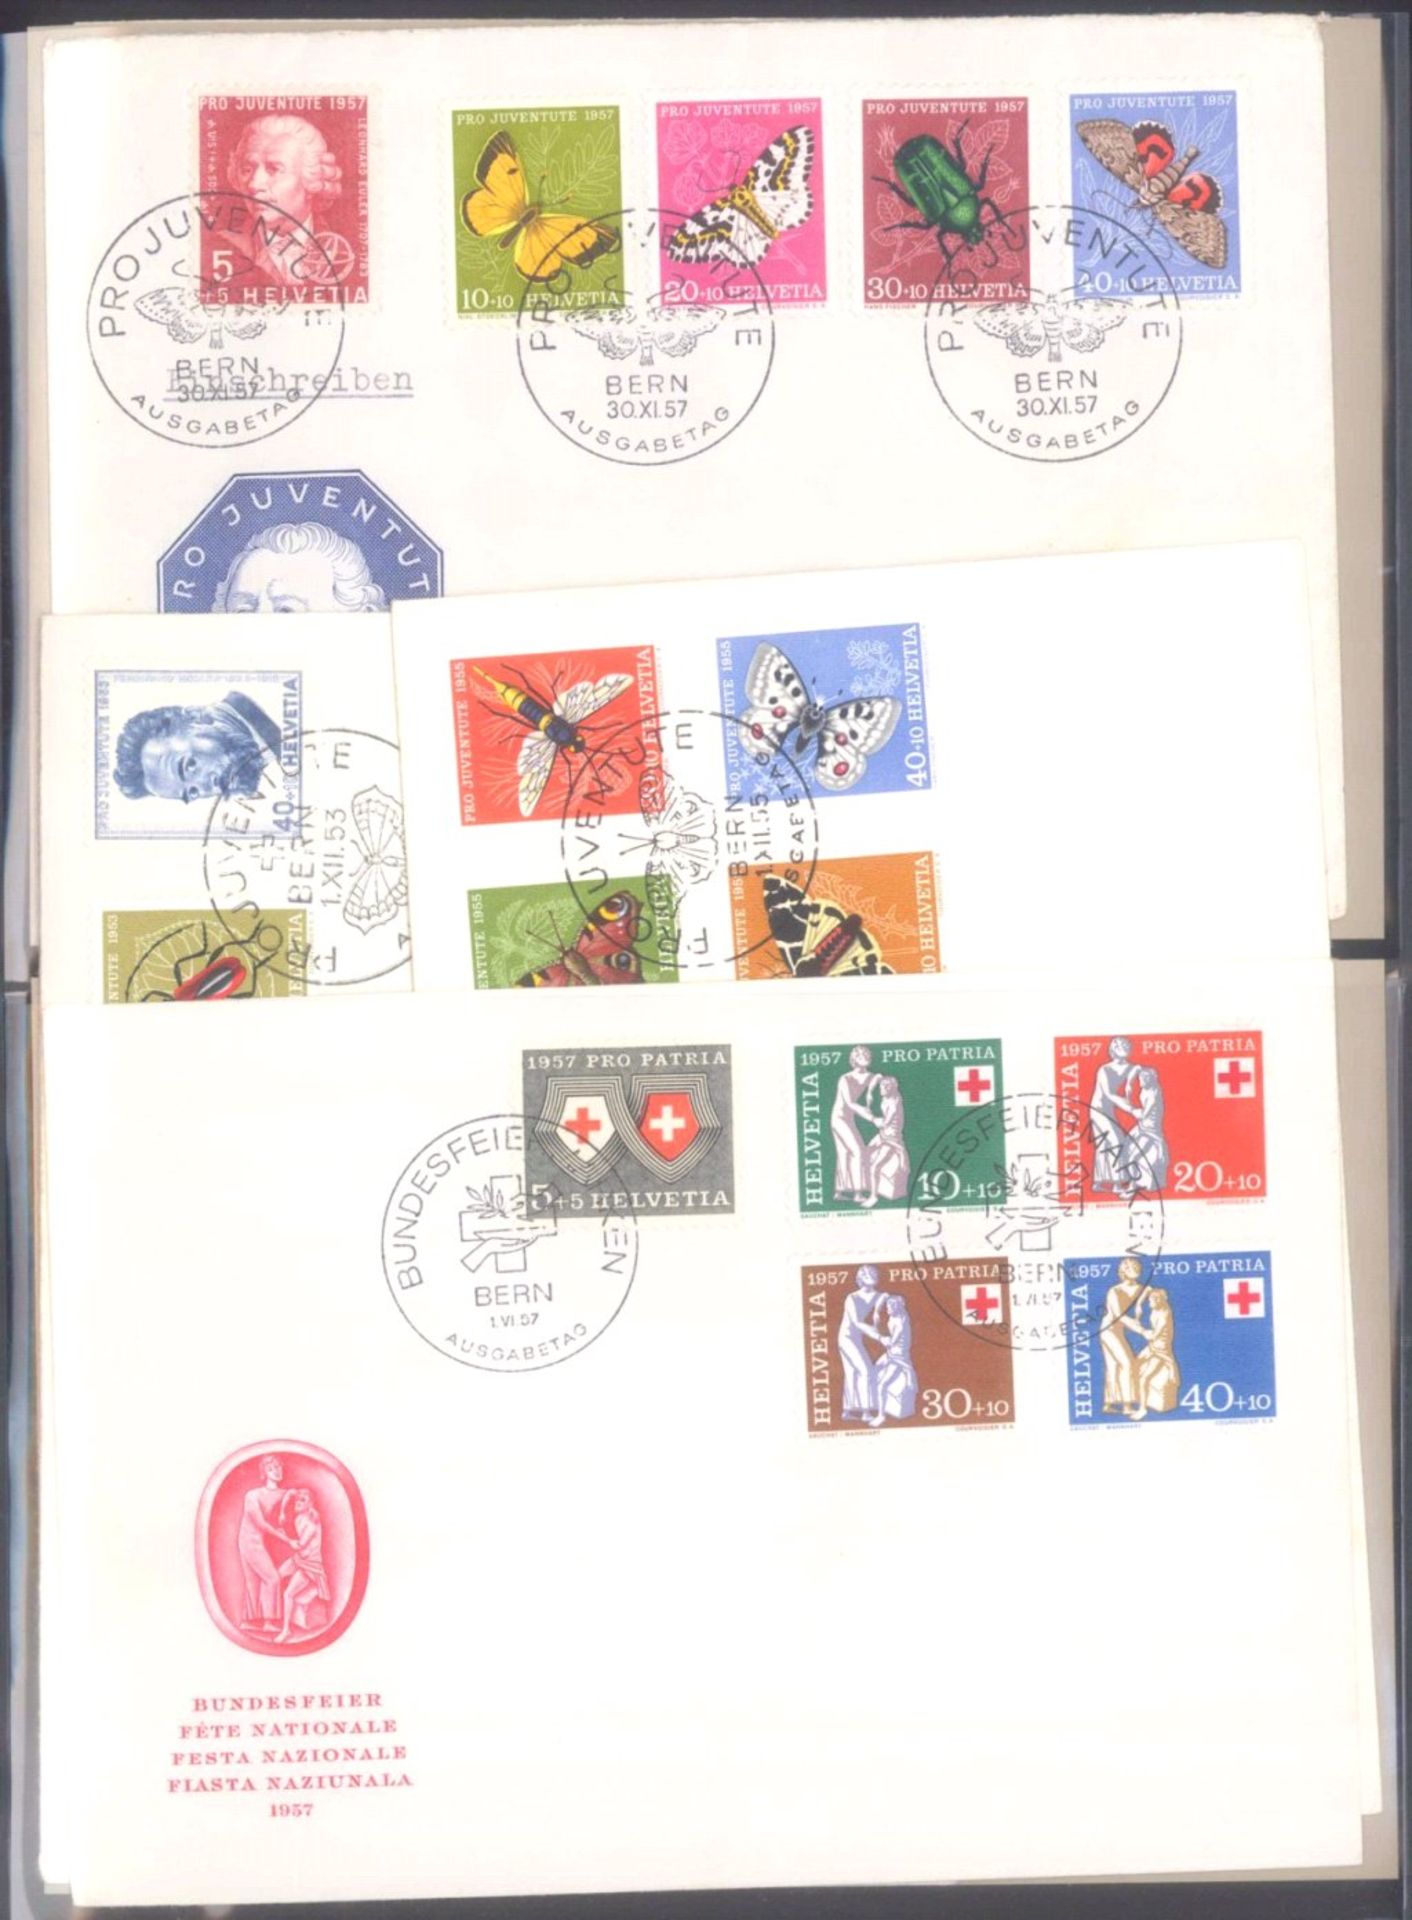 5 Alben Briefe Östereich, BRD und LiechtensteinViel Schweiz und Liechtenstein, wenig BRD. Zumeist - Bild 3 aus 6